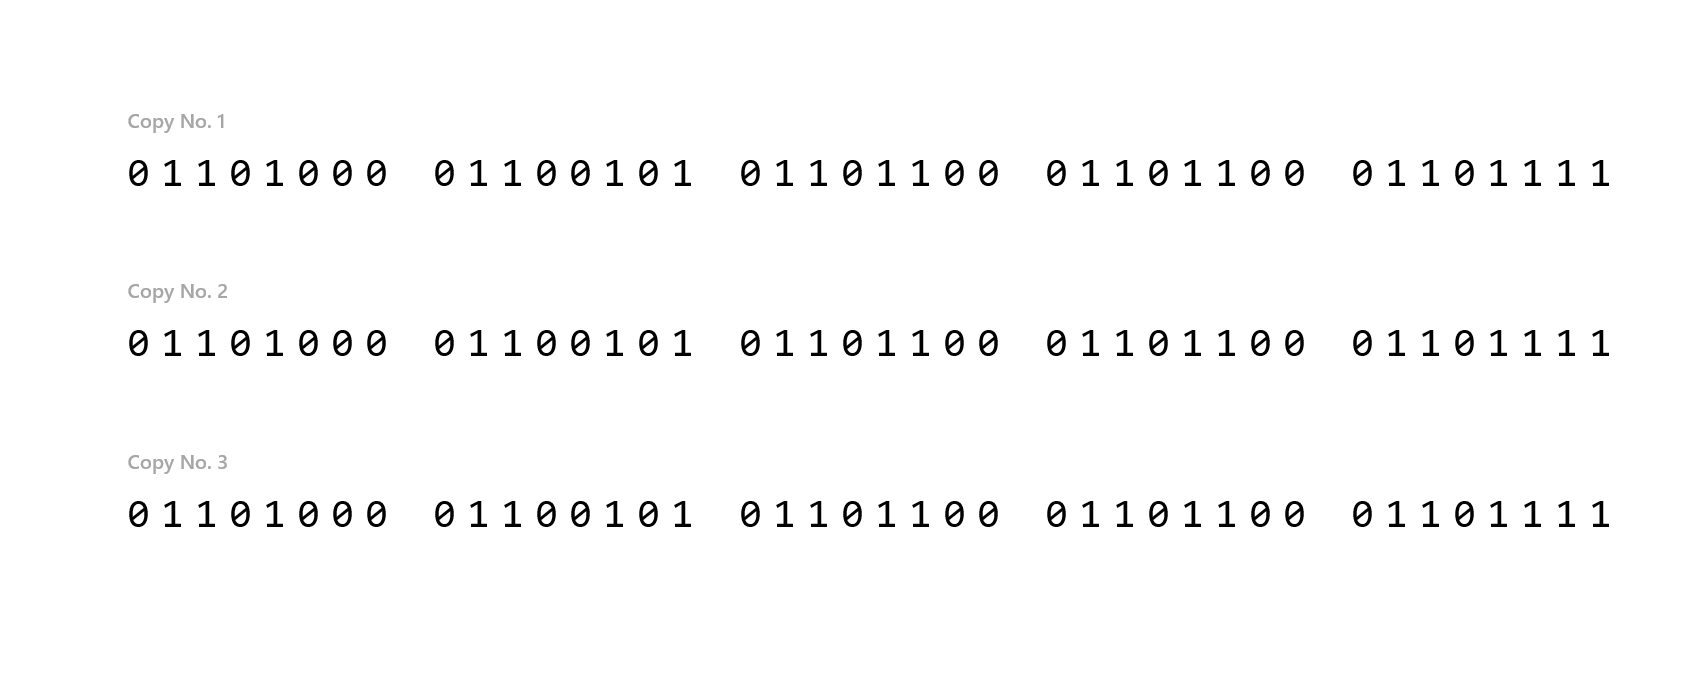 Immagine che mostra che non è possibile accedere al numero di copia 1 se si accetta il numero di server 1.